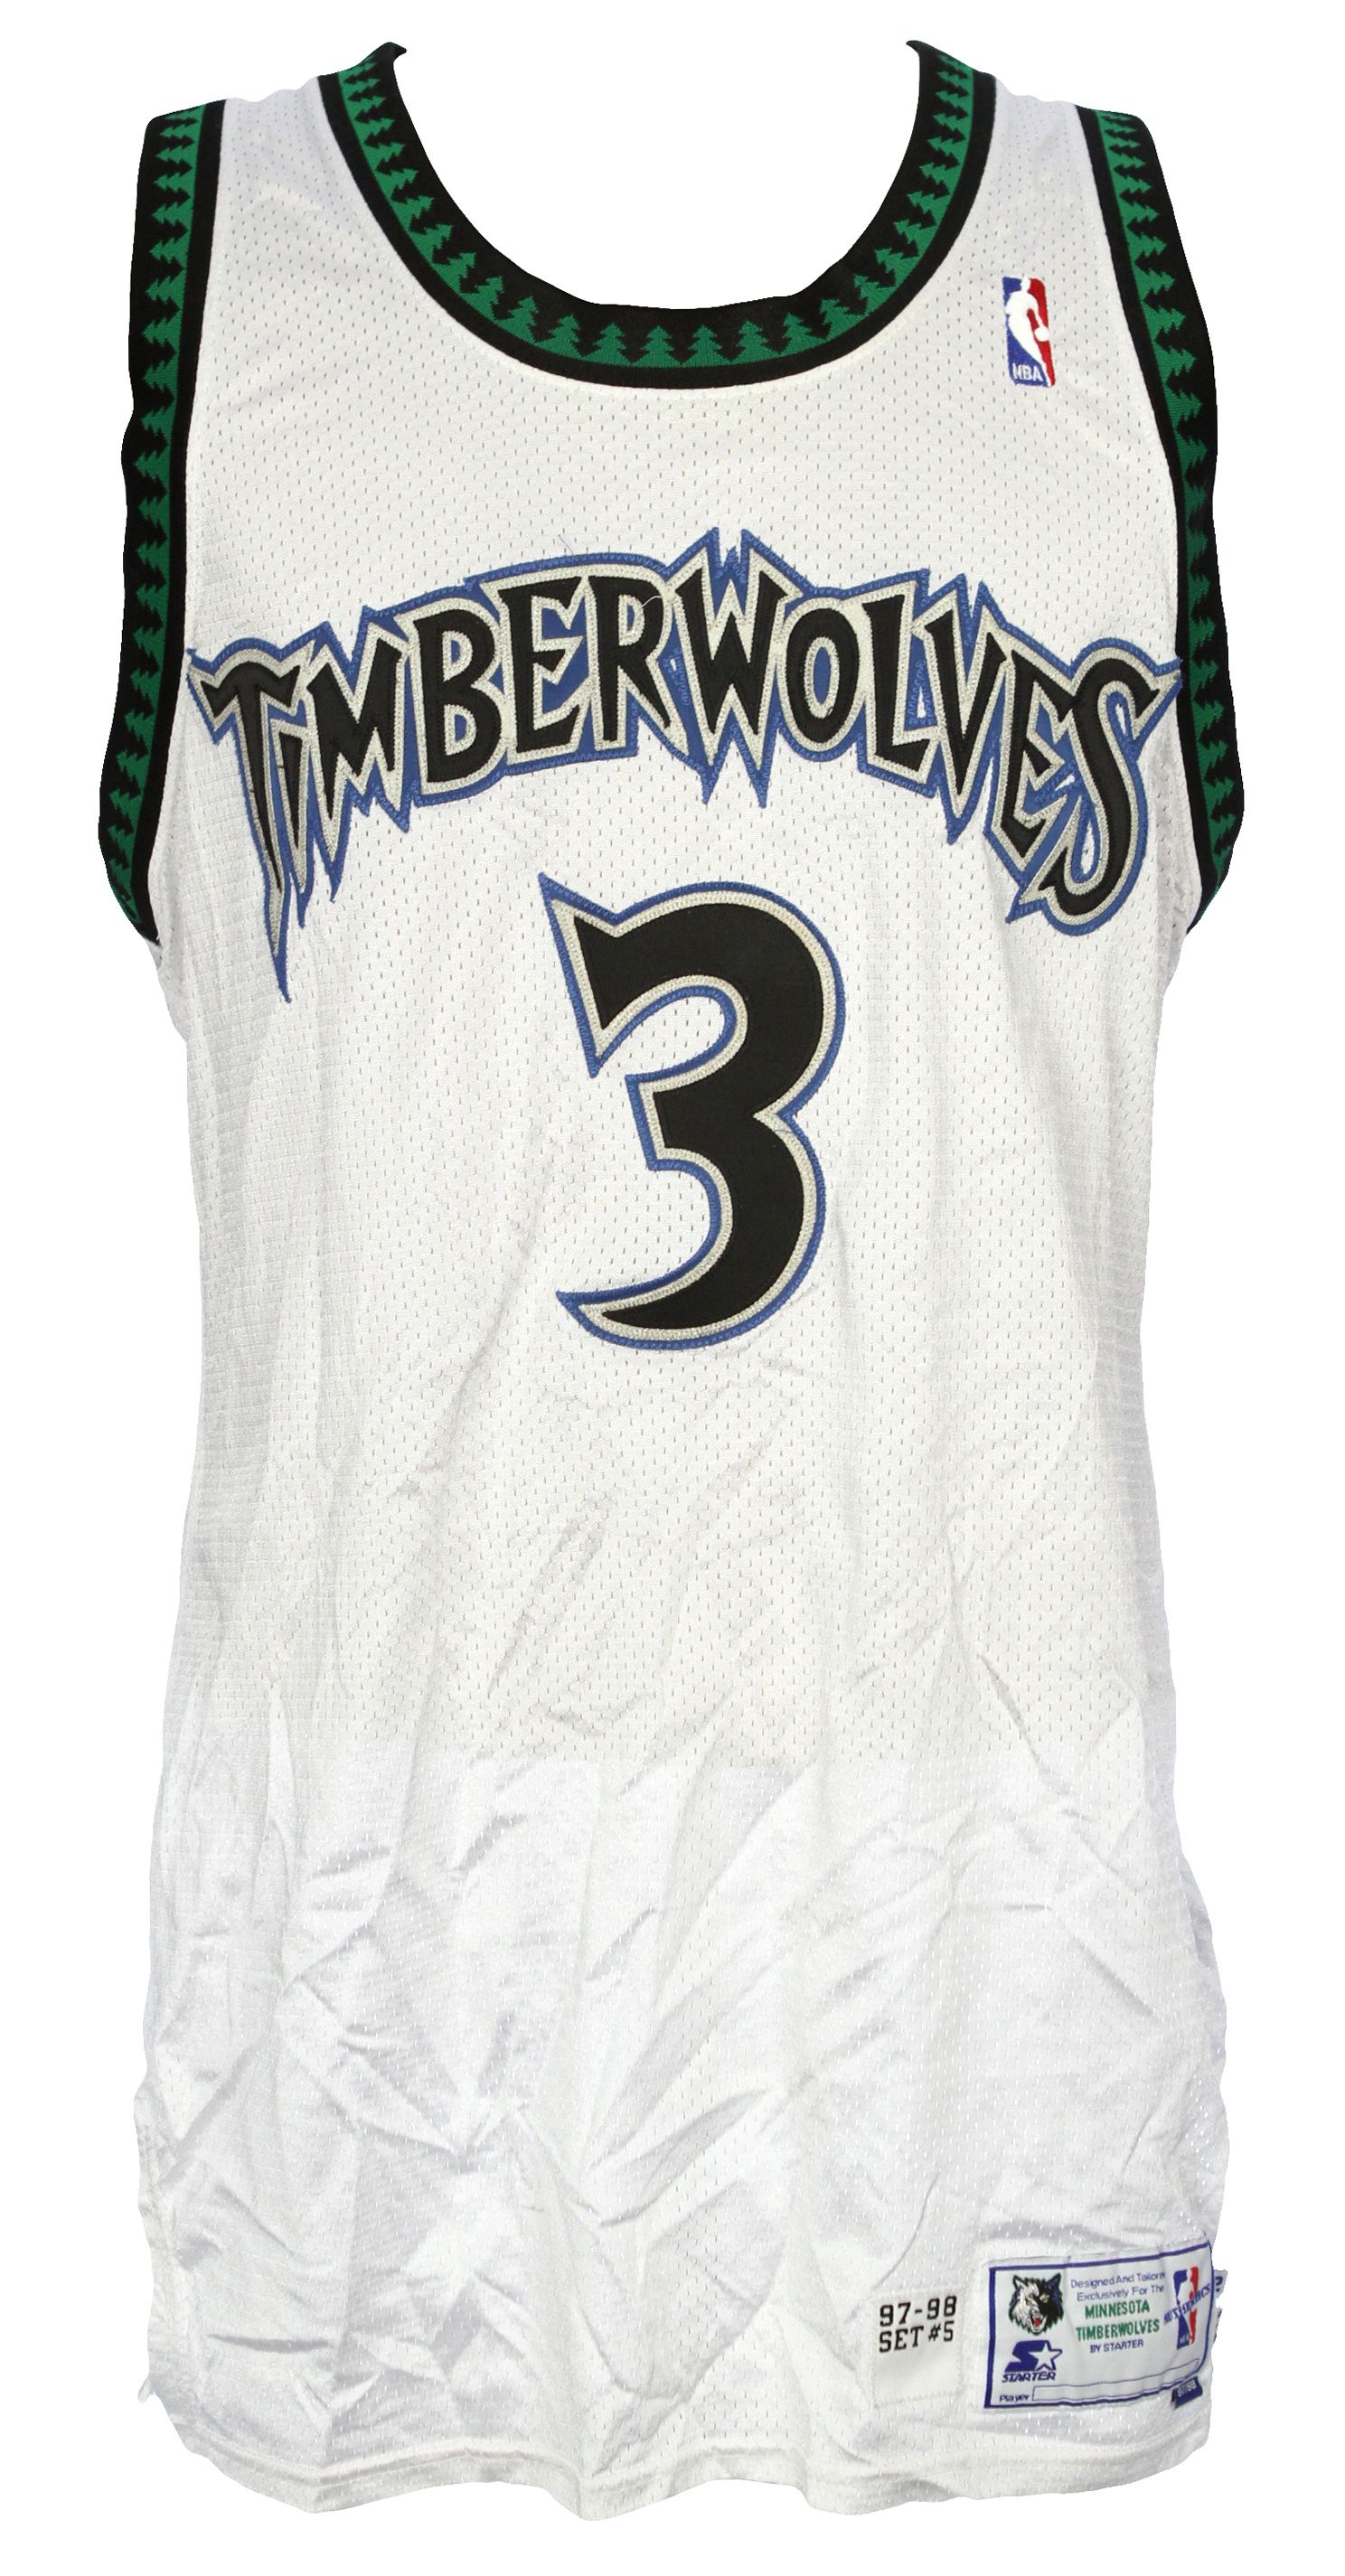 marbury timberwolves jersey